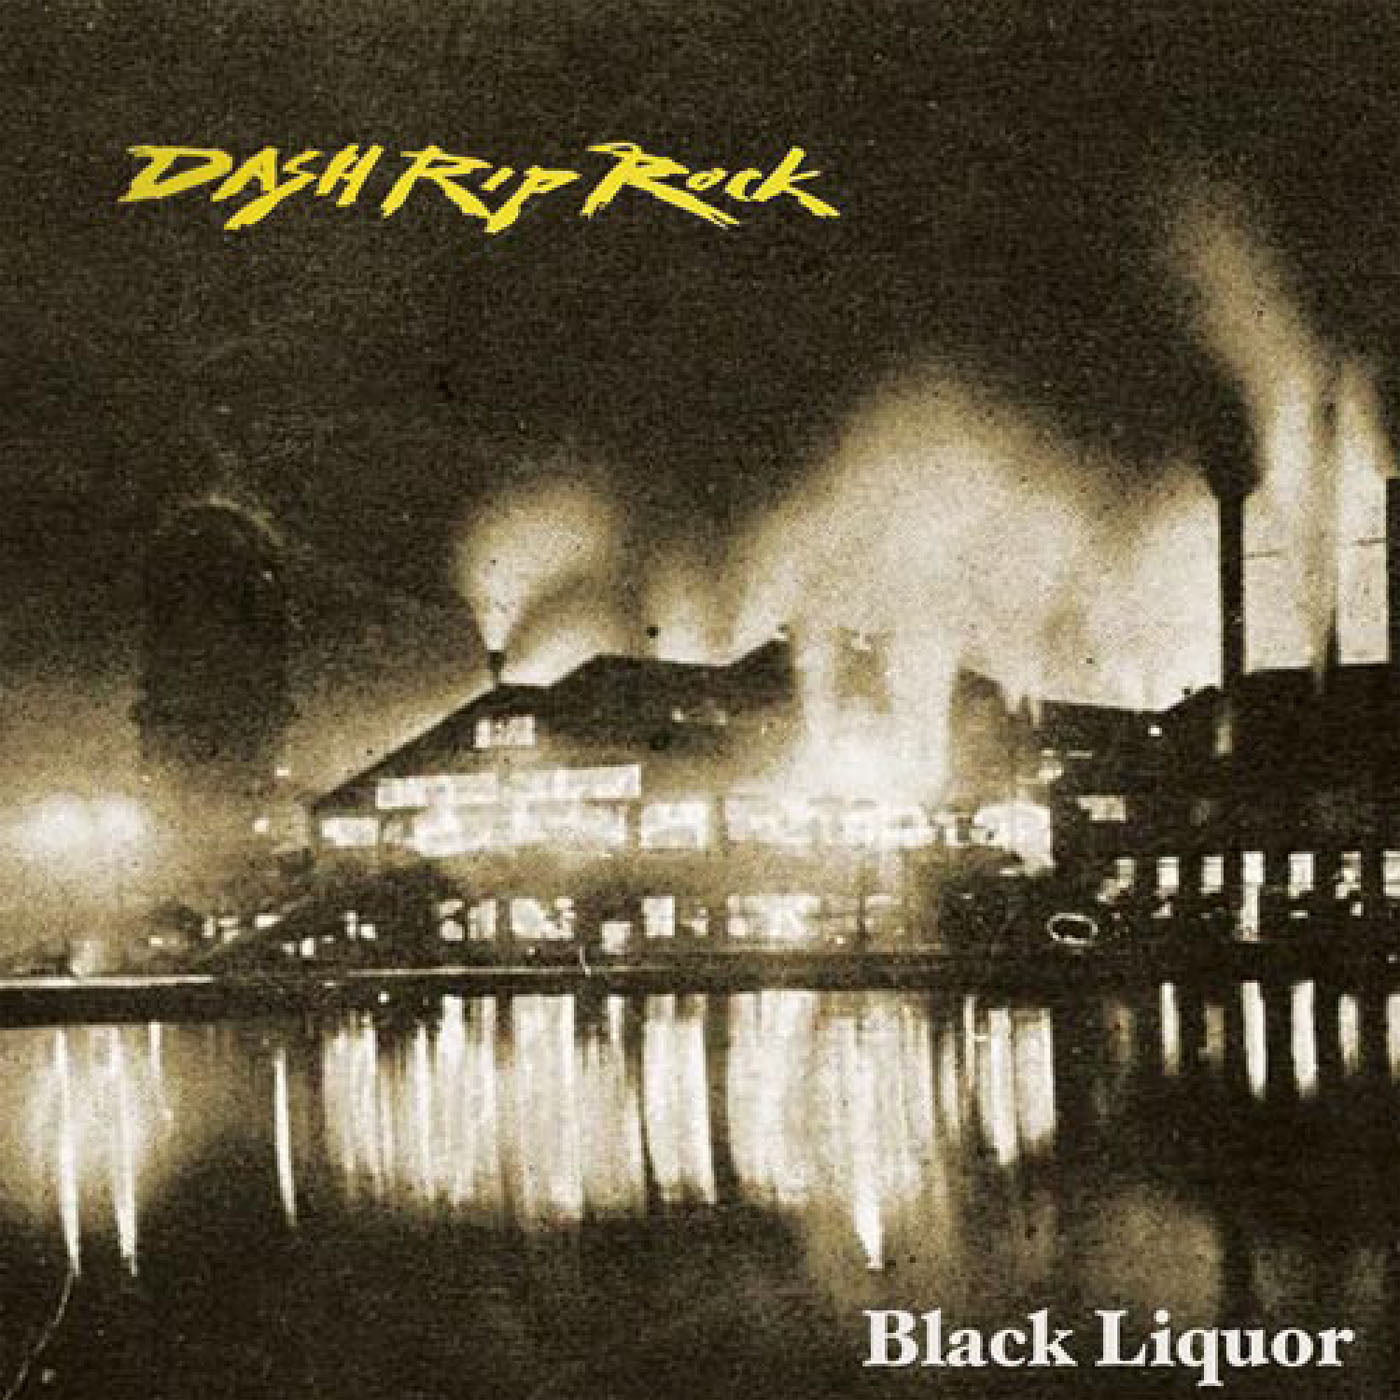 v449 - Dash Rip Rock - "Black Liquor"